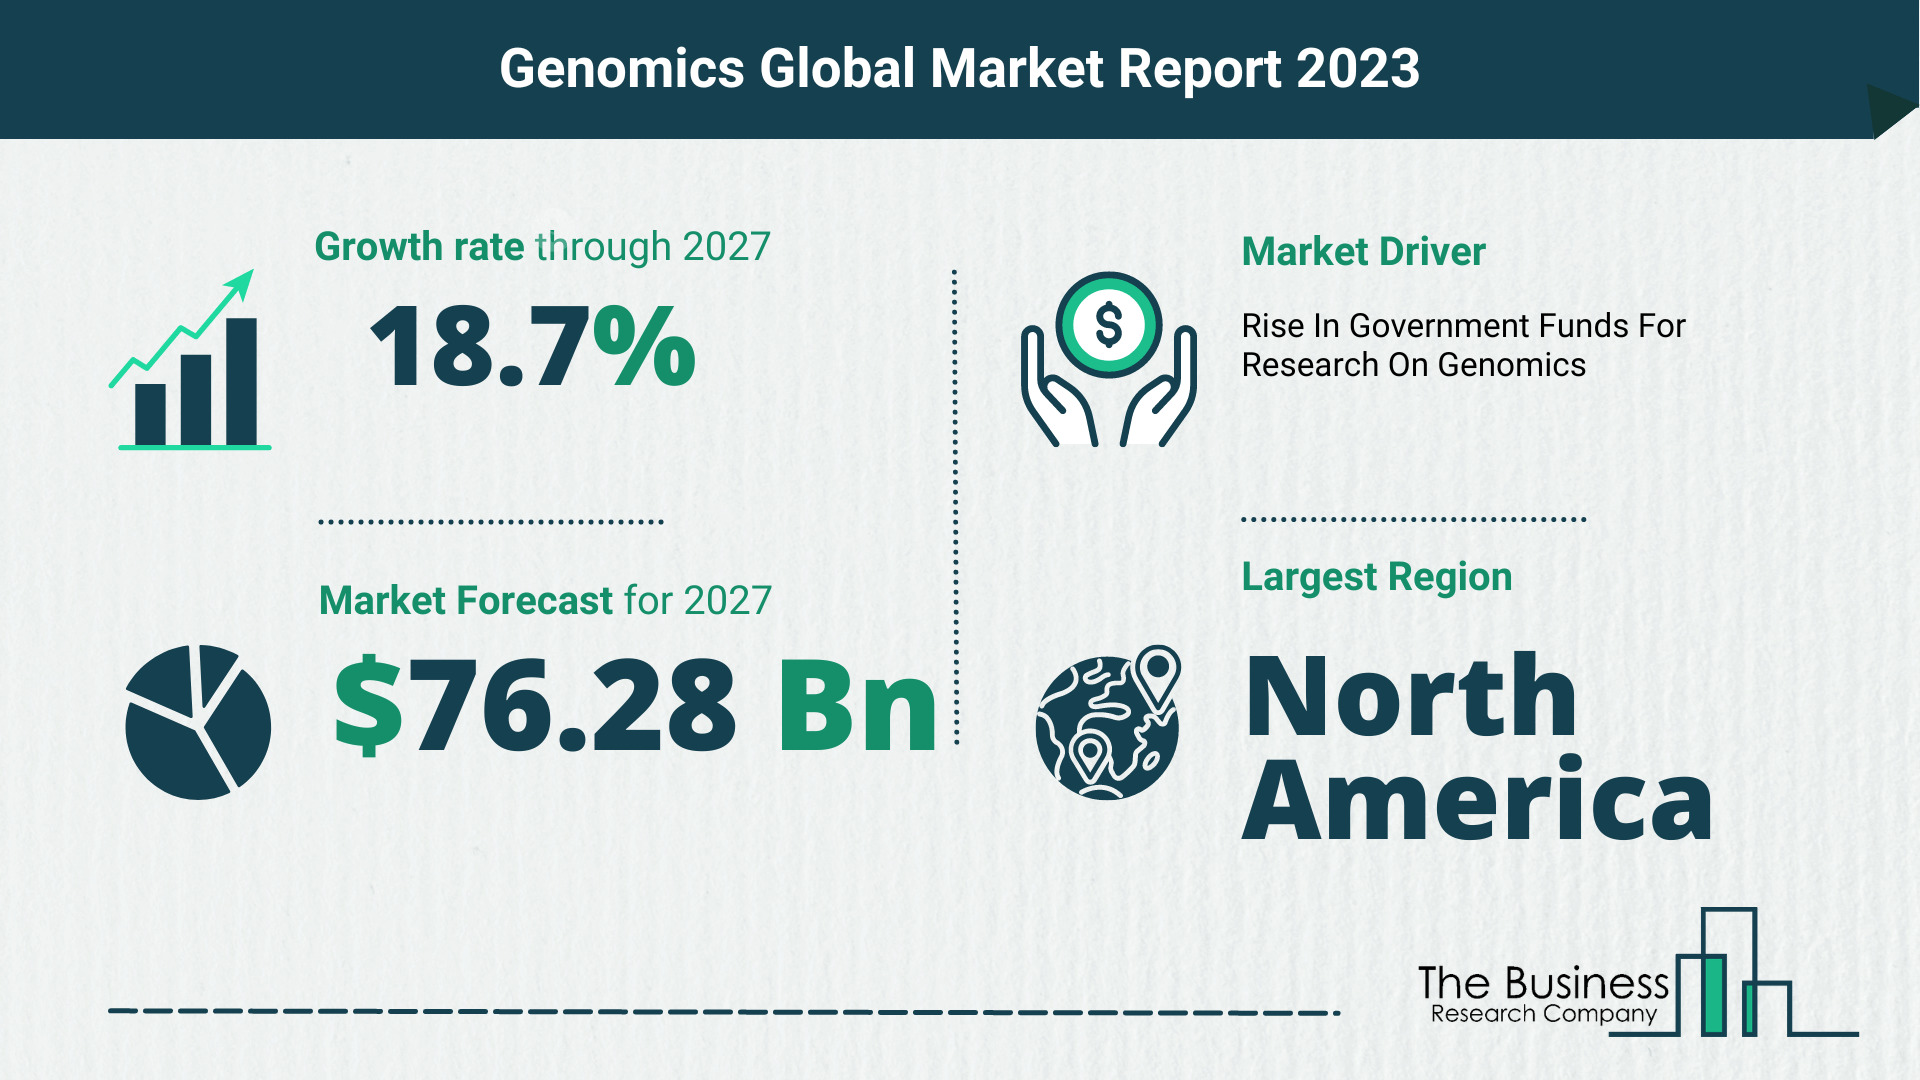 Global Genomics Market